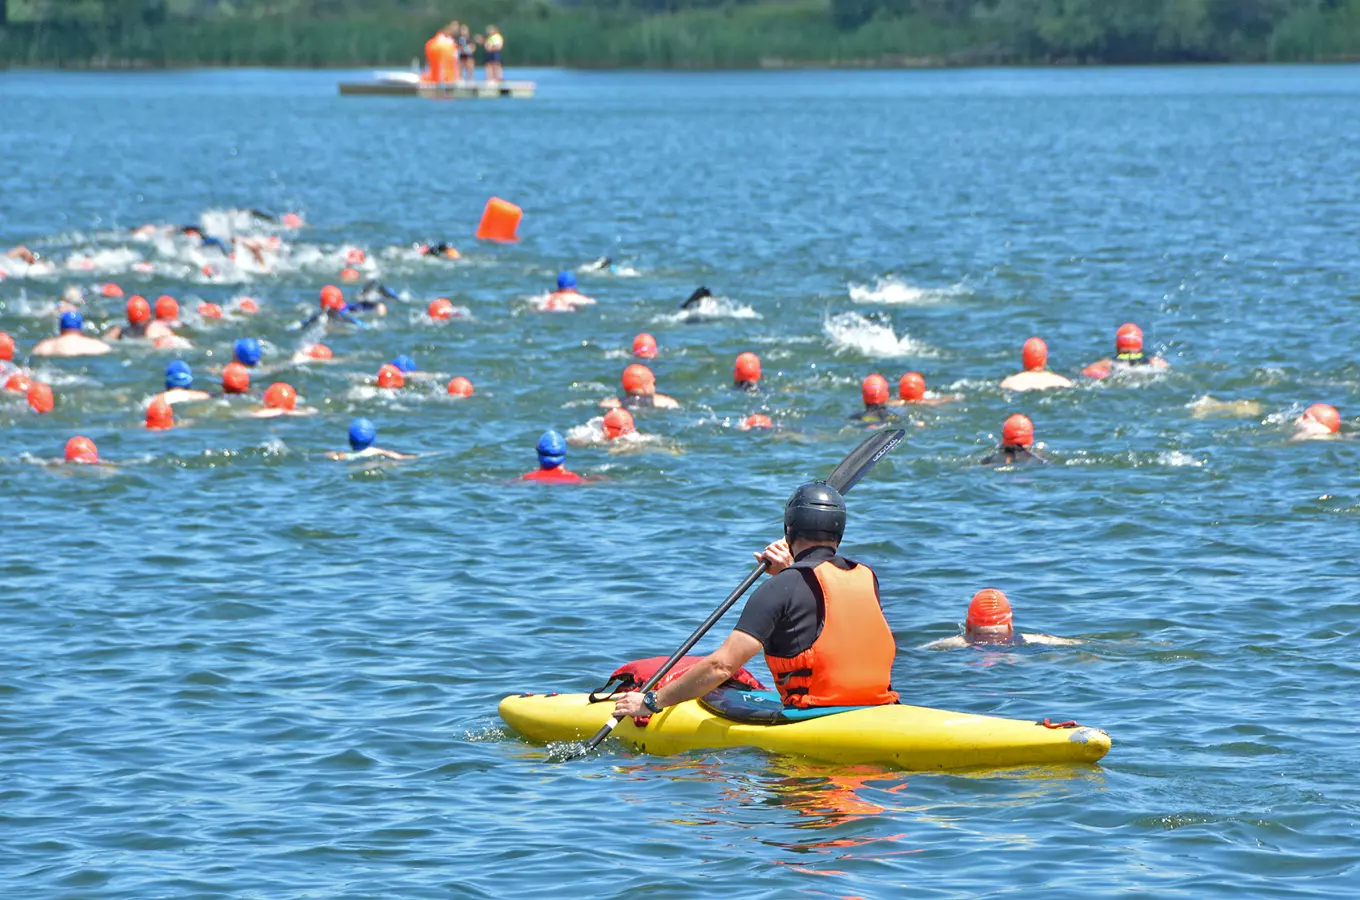 Vrbické jezero v Bohumíně ožije sportovními akcemi, k vidění budou dračí lodě i triatlon